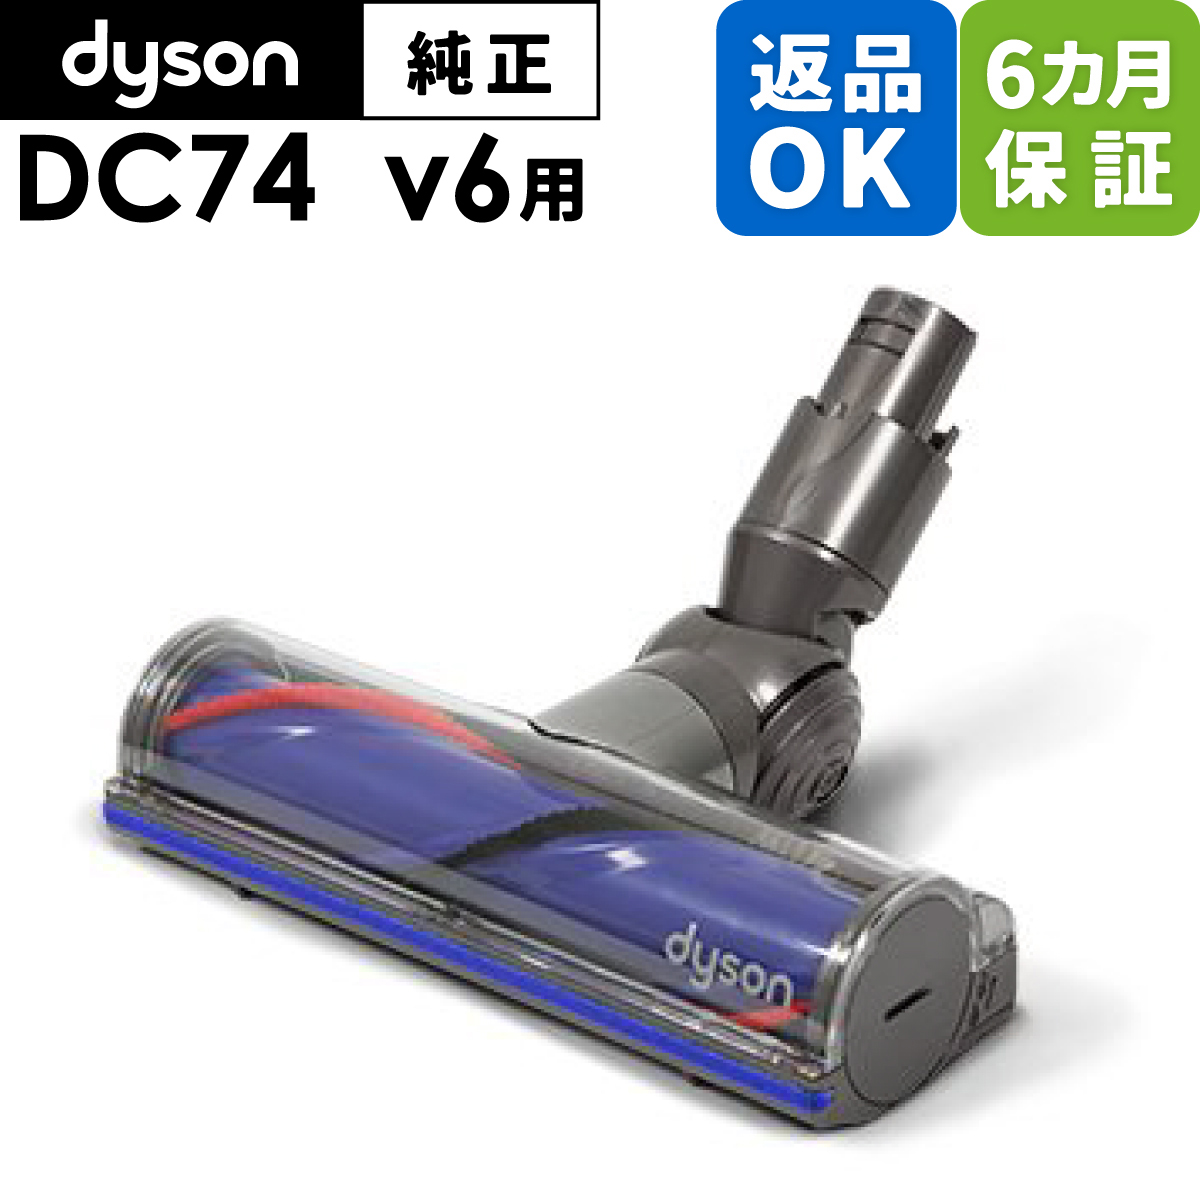 返品OK 6カ月保証 Dyson ダイソン 純正 ダイレクトドライブクリーナーヘッド DC74 V6 fluffy,animalpro適合 モデル 掃除機 部品